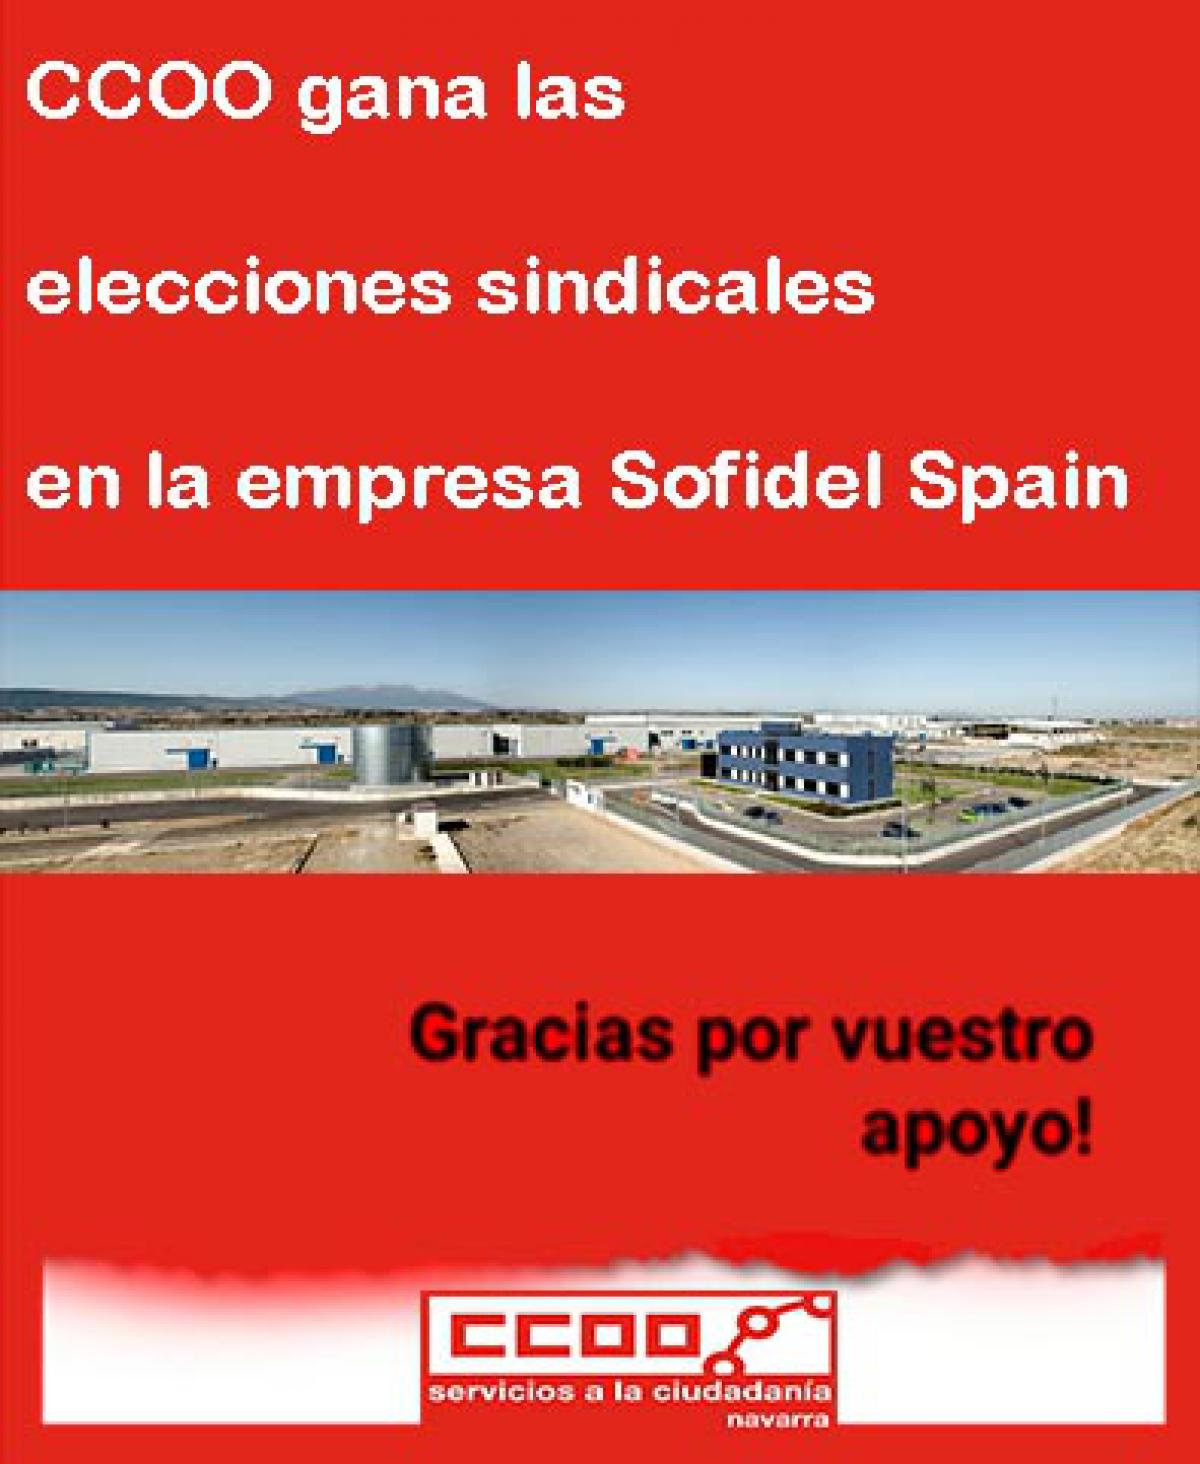 CCOO gana las elecciones sindicales en la papelera Sofidel Spain de Buuel